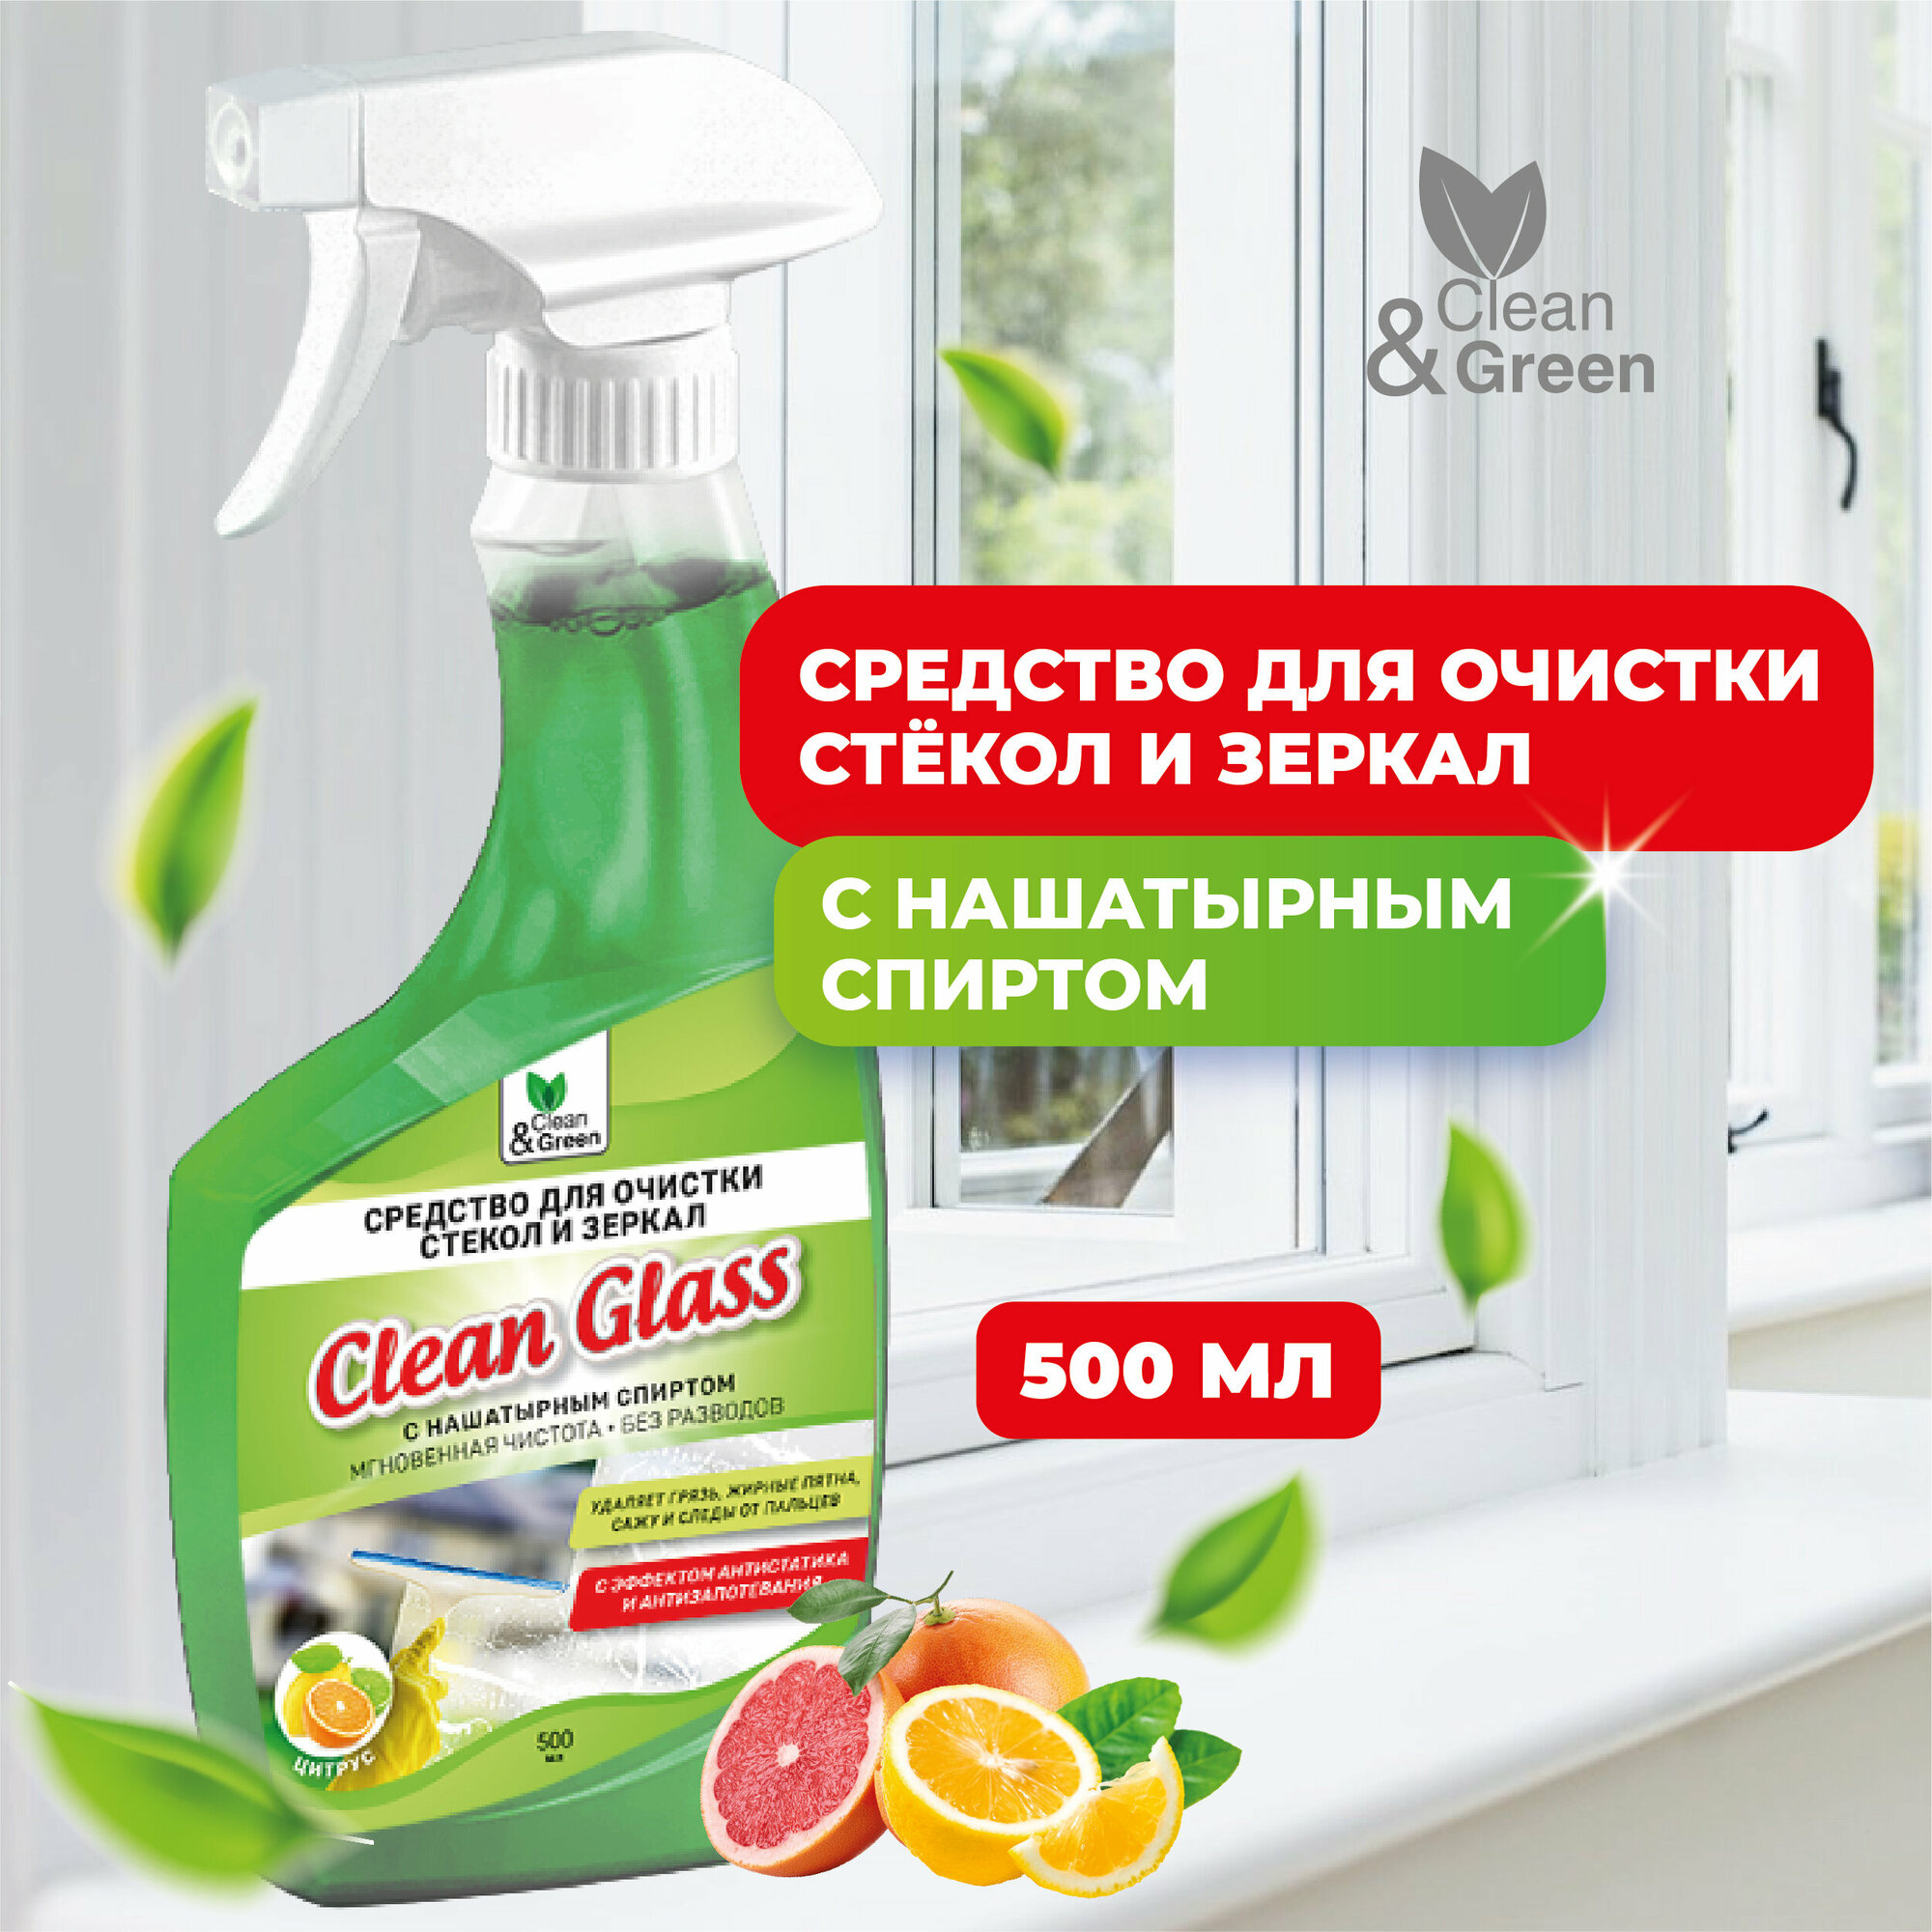 Средство для очистки стекол и зеркал с нашатырным спиртом триггер 500 мл. Clean&Green CG8285